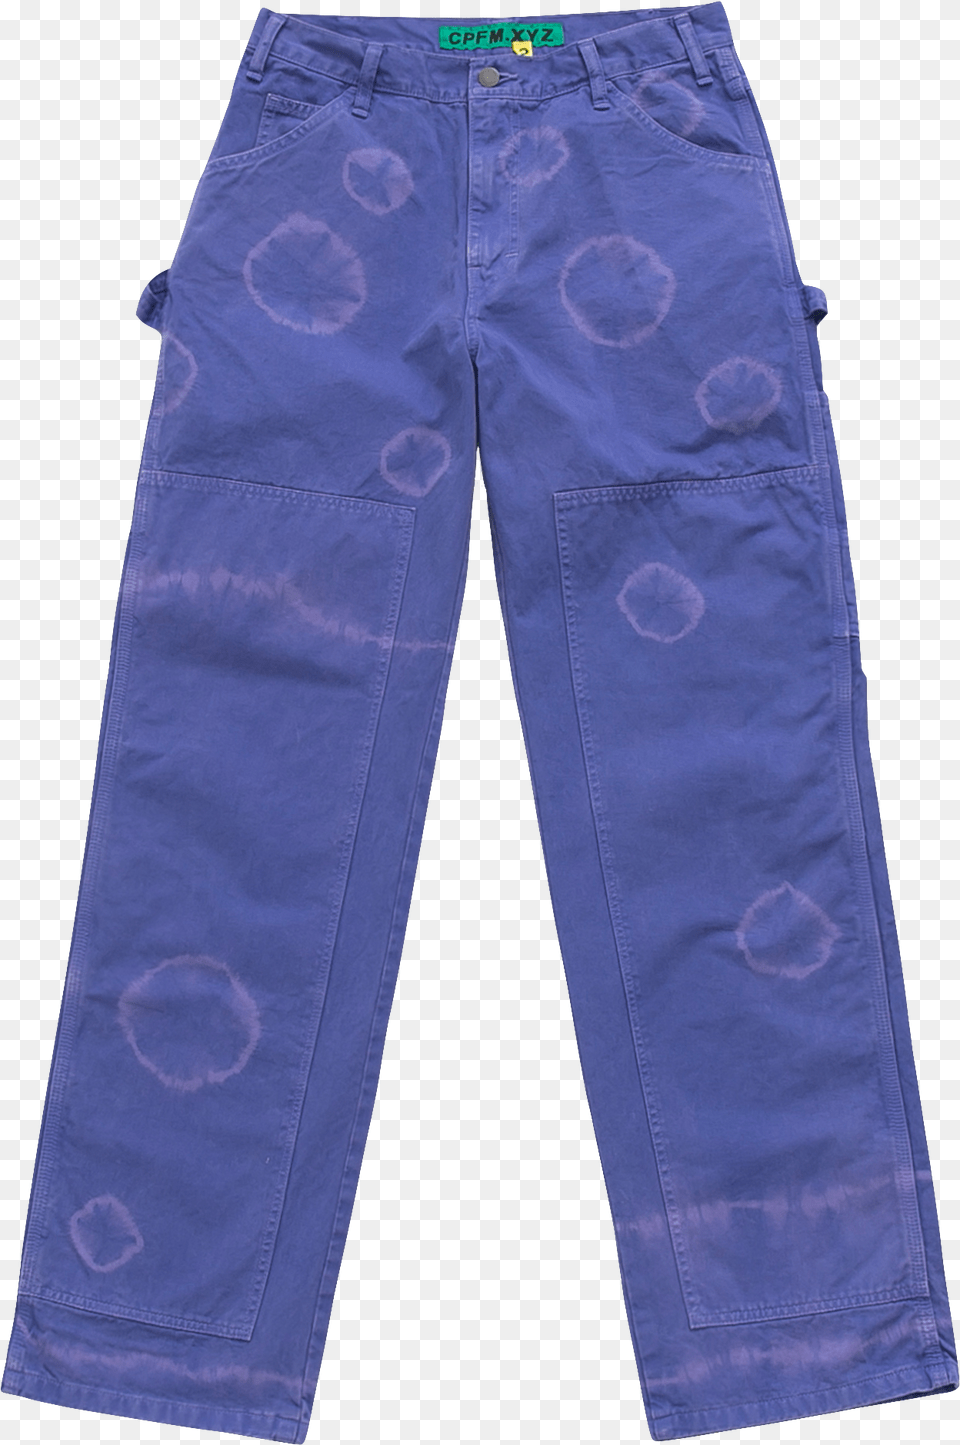 Cactus Plant Flea Market Pants, Clothing, Jeans Free Transparent Png